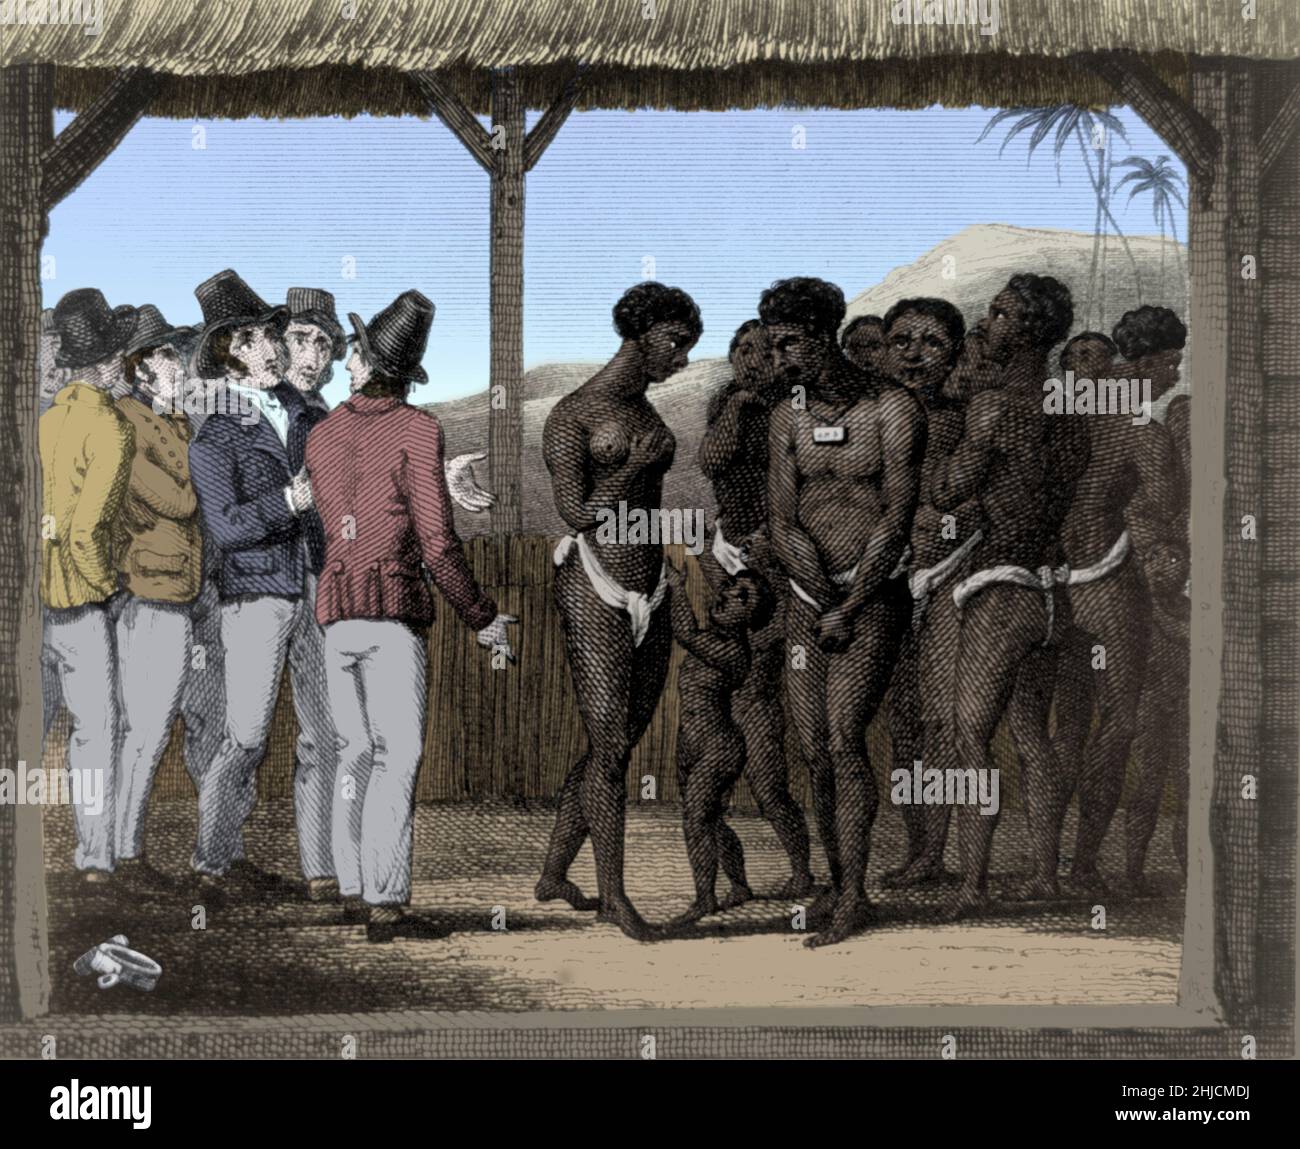 Esclaves exposés à la vente.Le commerce des esclaves de l'Atlantique a impliqué le transport par des négociants d'esclaves de populations africaines, principalement vers les Amériques.La grande majorité de ceux qui ont été asservis et transportés dans le commerce transatlantique des esclaves étaient des Africains d'Afrique centrale et occidentale, qui avaient été vendus par d'autres Africains de l'Ouest aux négociants d'esclaves d'Europe occidentale, qui les ont amenés aux Amériques.Les économies de l'Atlantique Sud et des Caraïbes dépendent en particulier de l'offre de main-d'œuvre sûre pour la production de cultures de base, la fabrication de biens et de vêtements à vendre en Europe.Aucun artiste crédité Banque D'Images